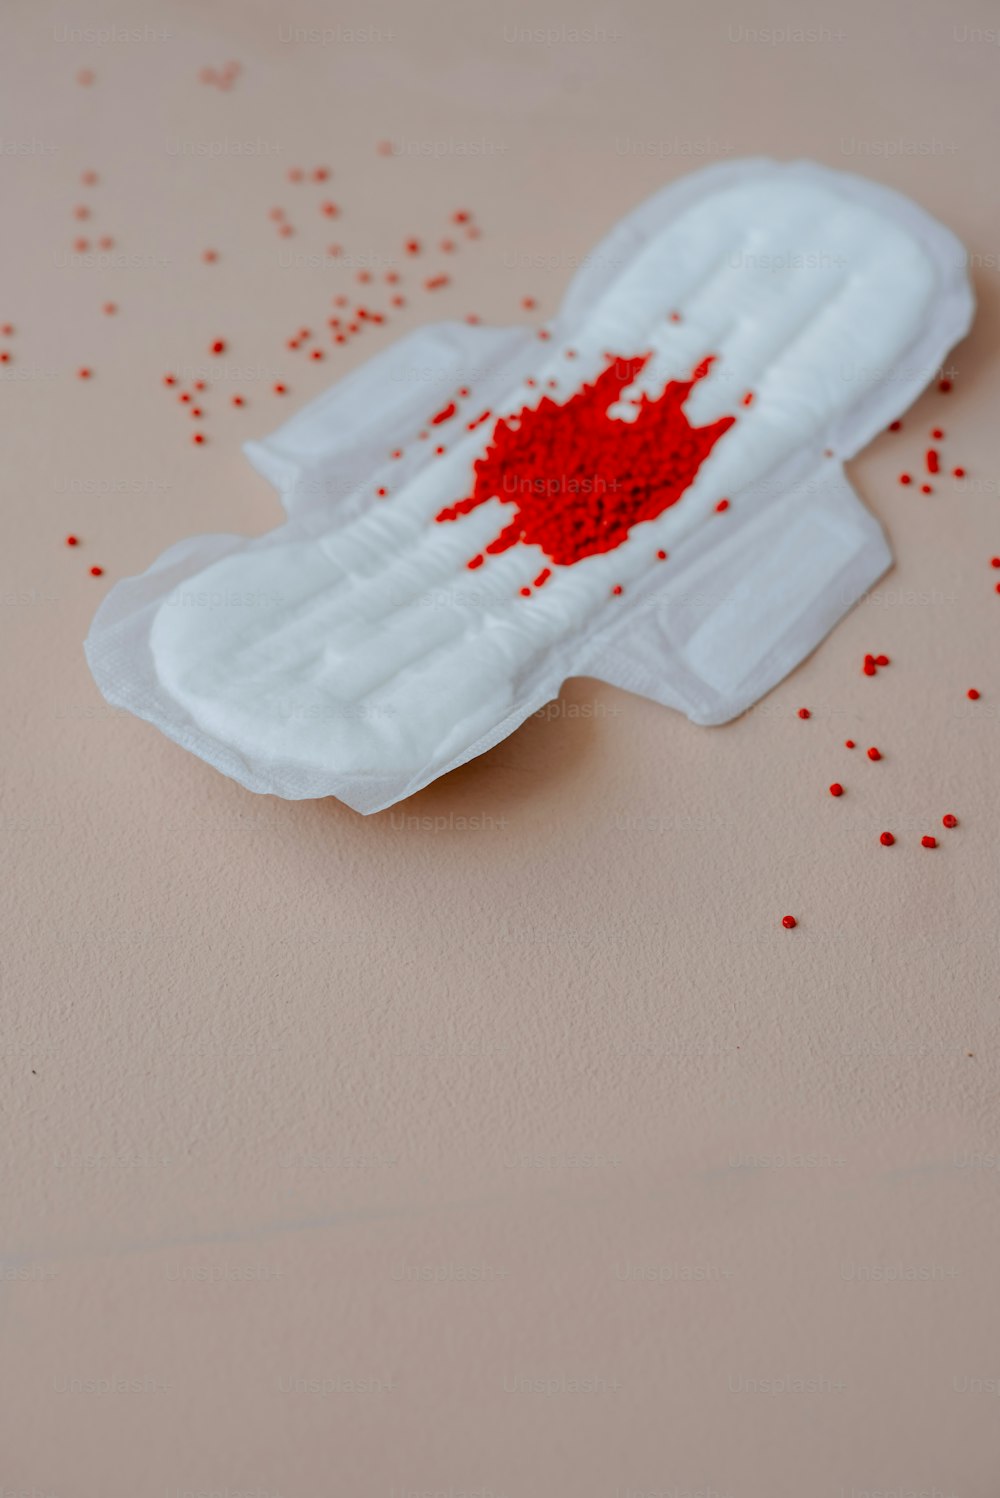 um pedaço de papel branco com borrifos vermelhos